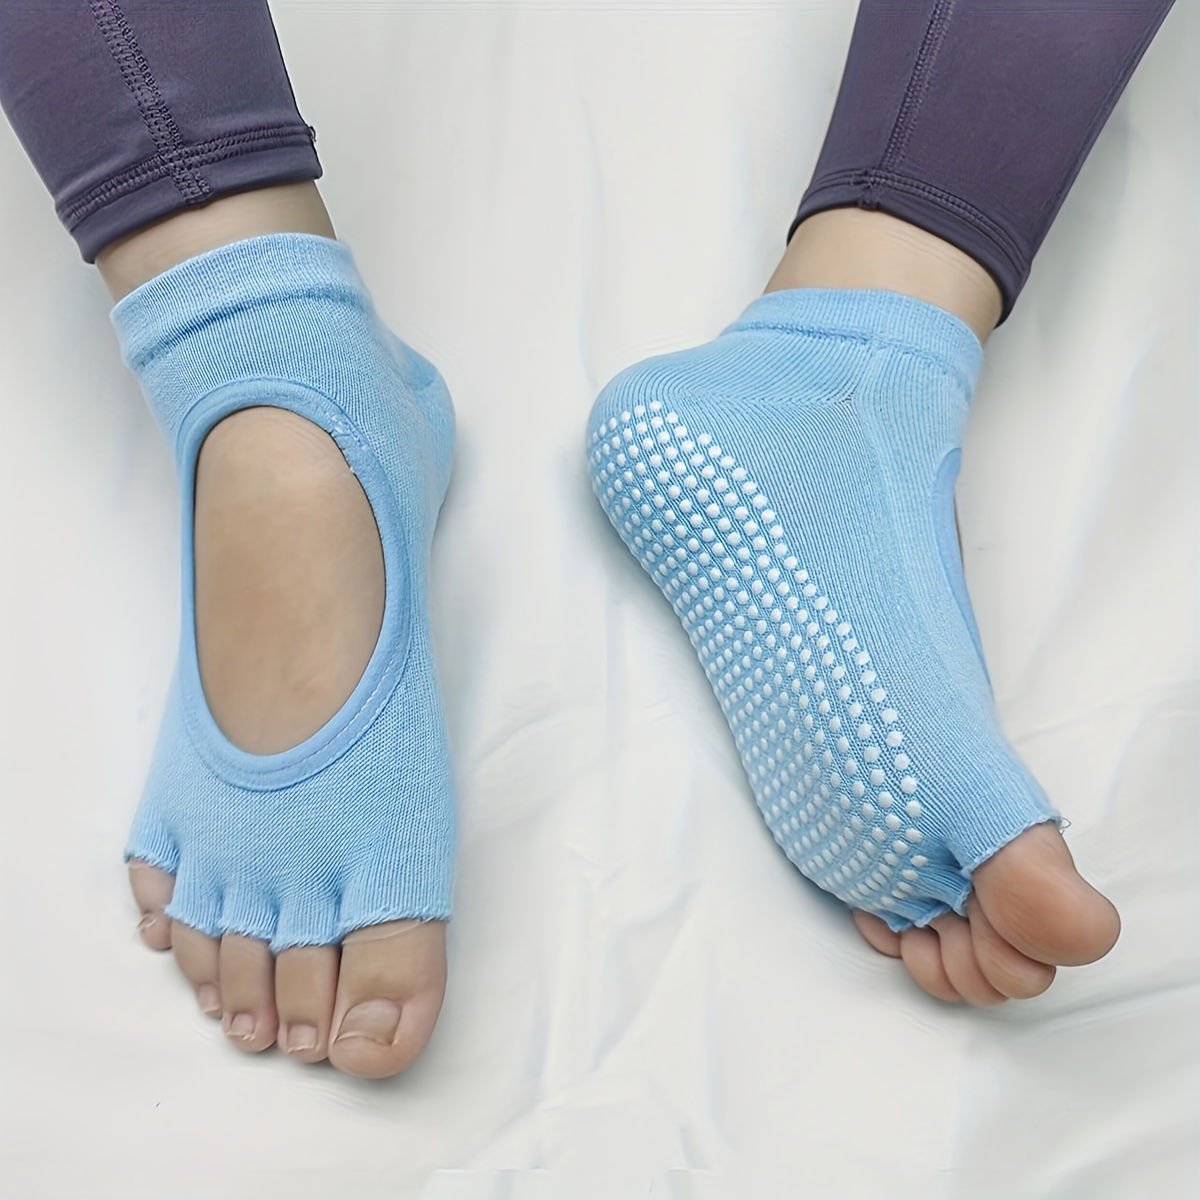  toesox Grip Ankle Full Toe Multi Pack – Grip Non-Slip